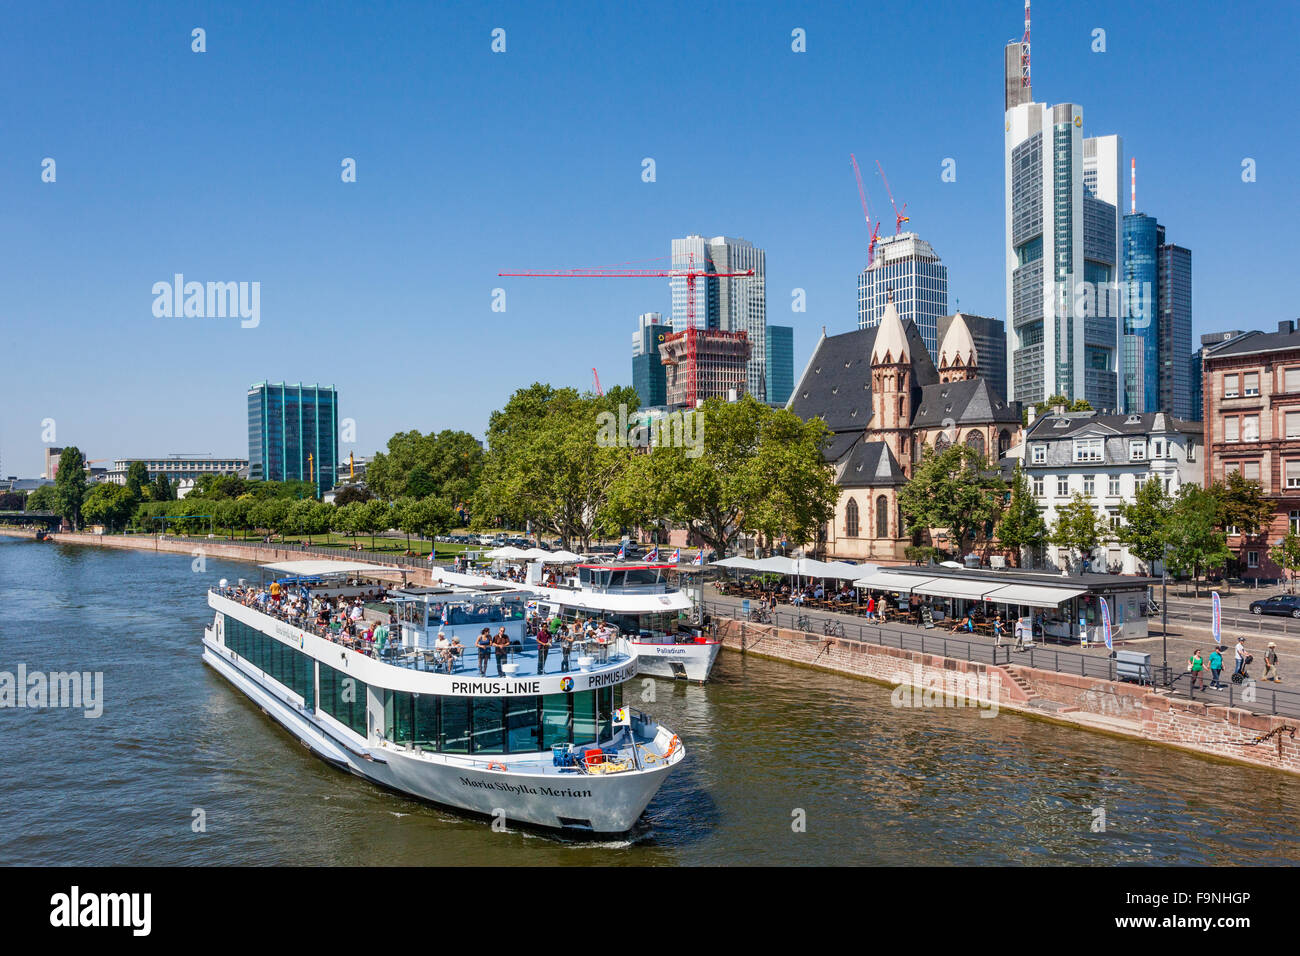 Allemagne, Hesse, Frankfurt am Main, Primus-Linie river cruise ship'Maria Sibylla Merian" au départ de la rivière Mainkai Banque D'Images